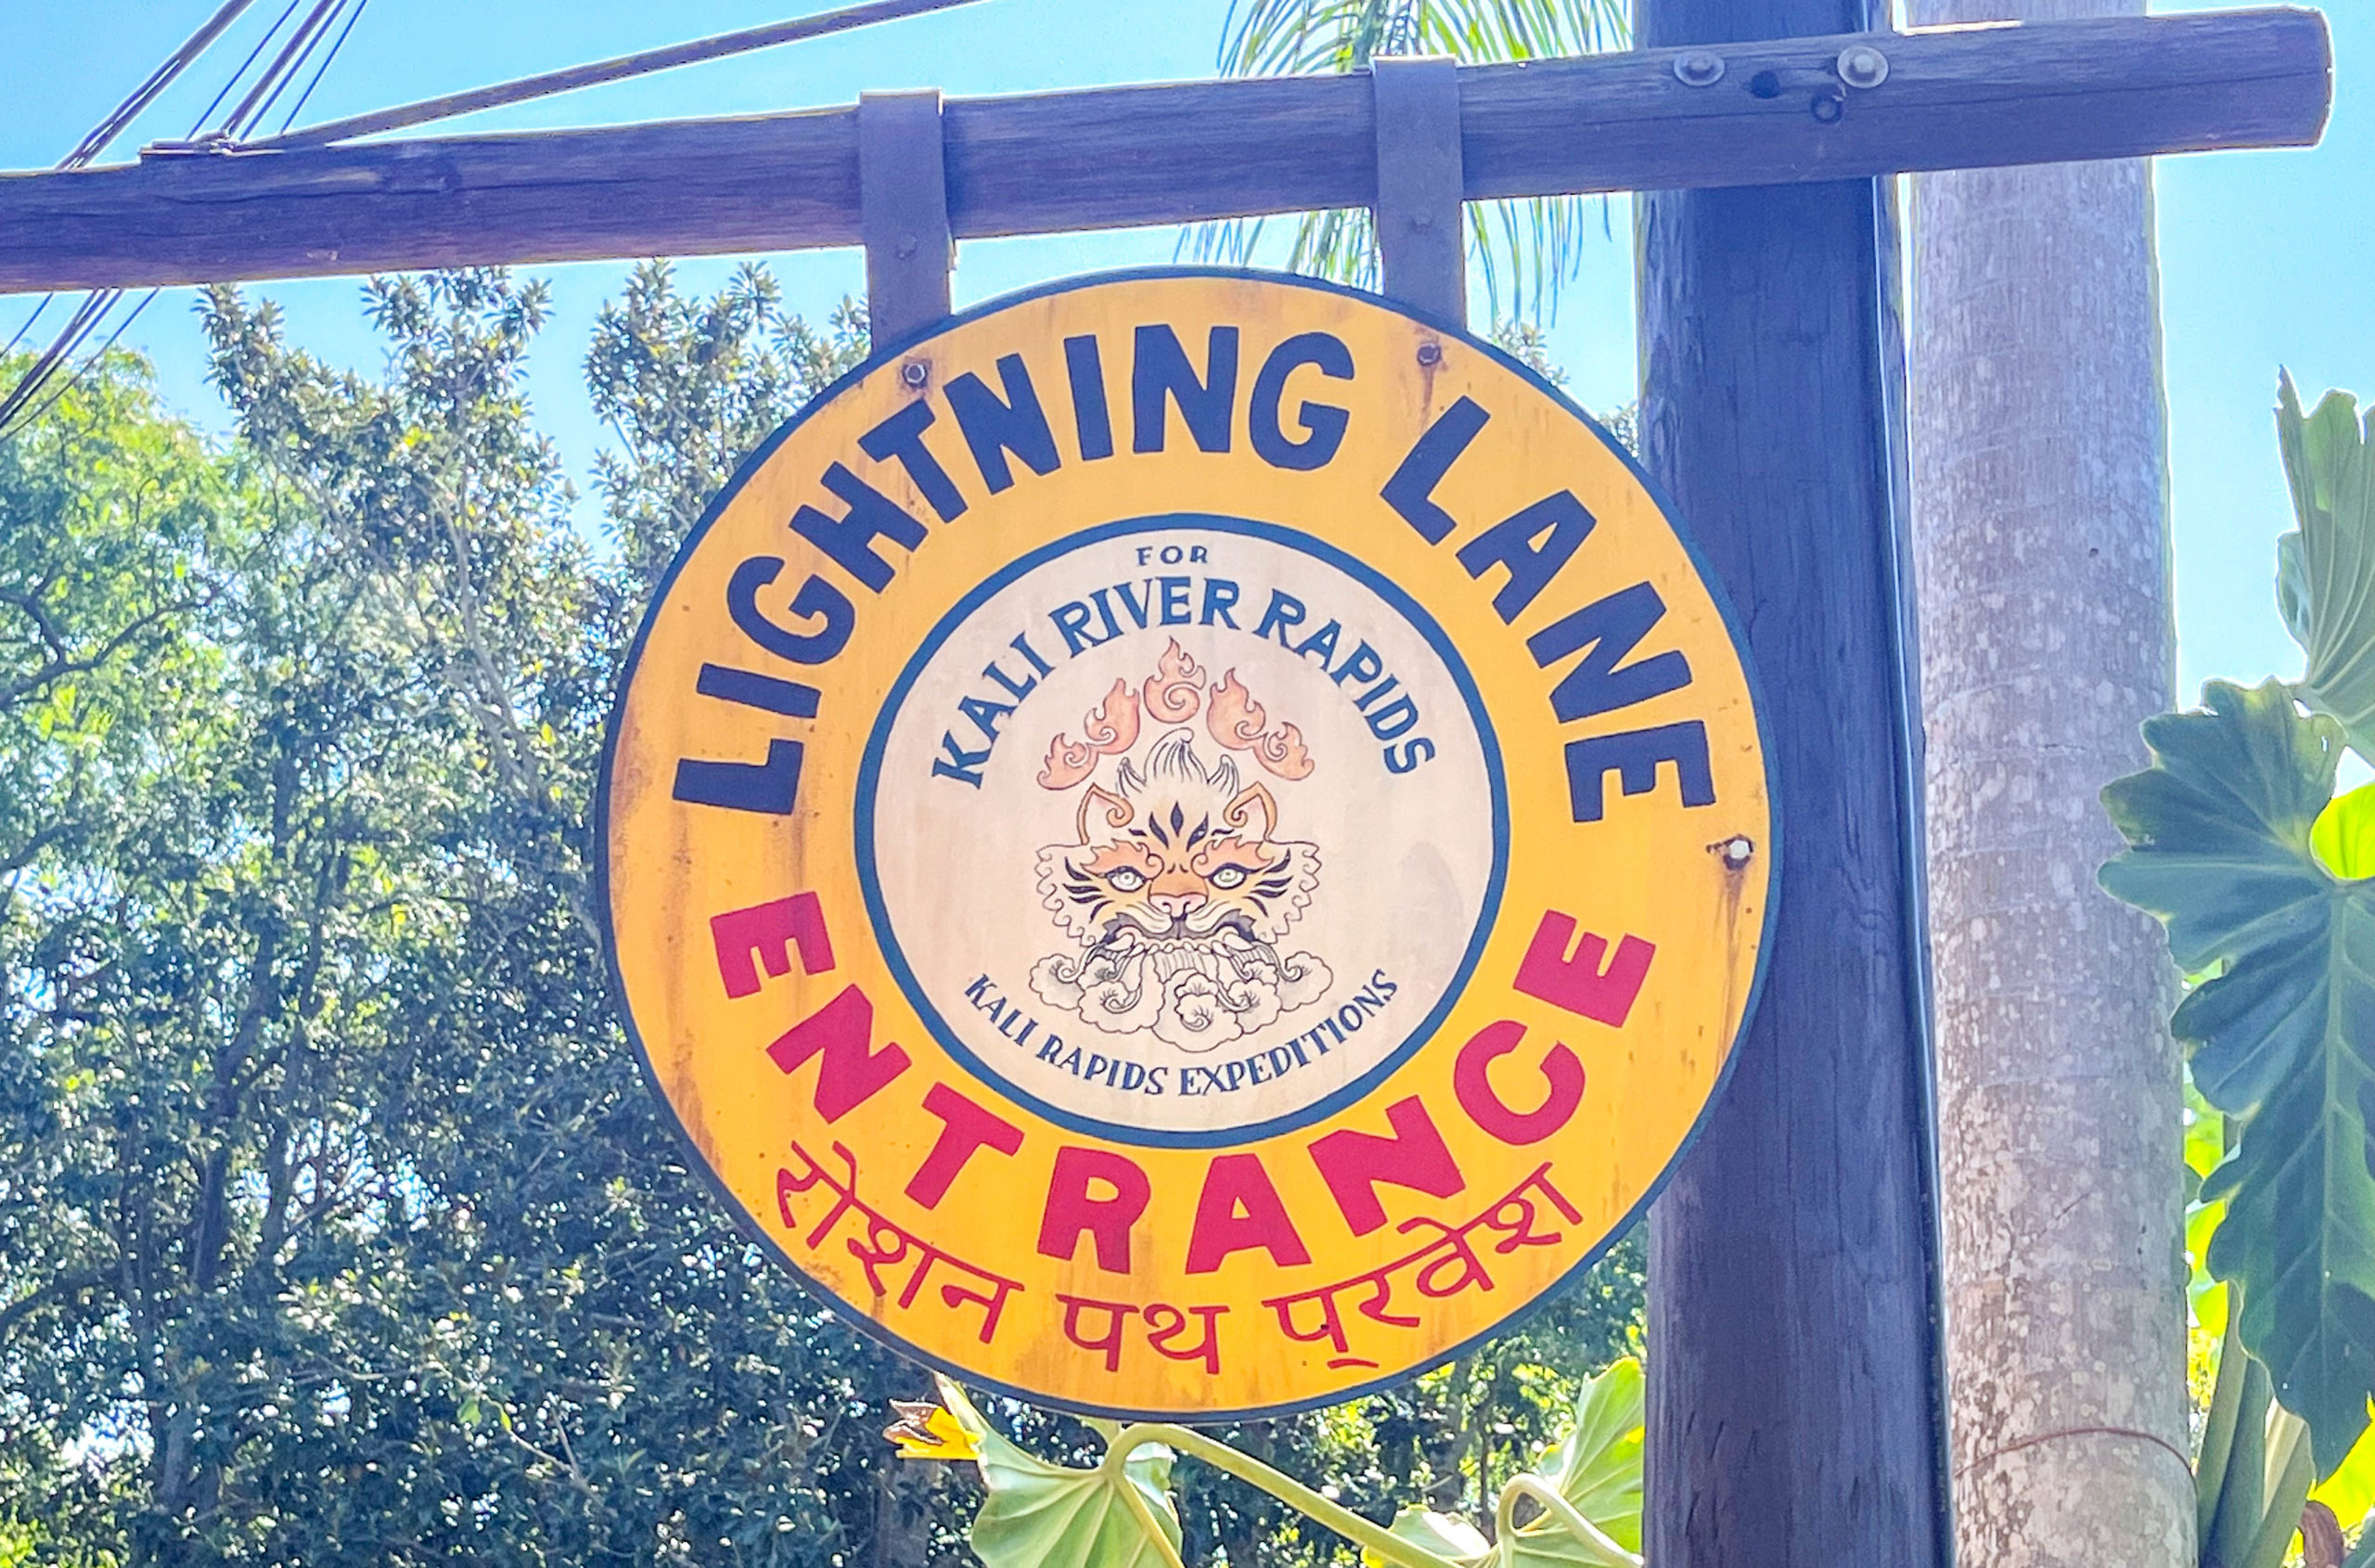 Lightning Lane